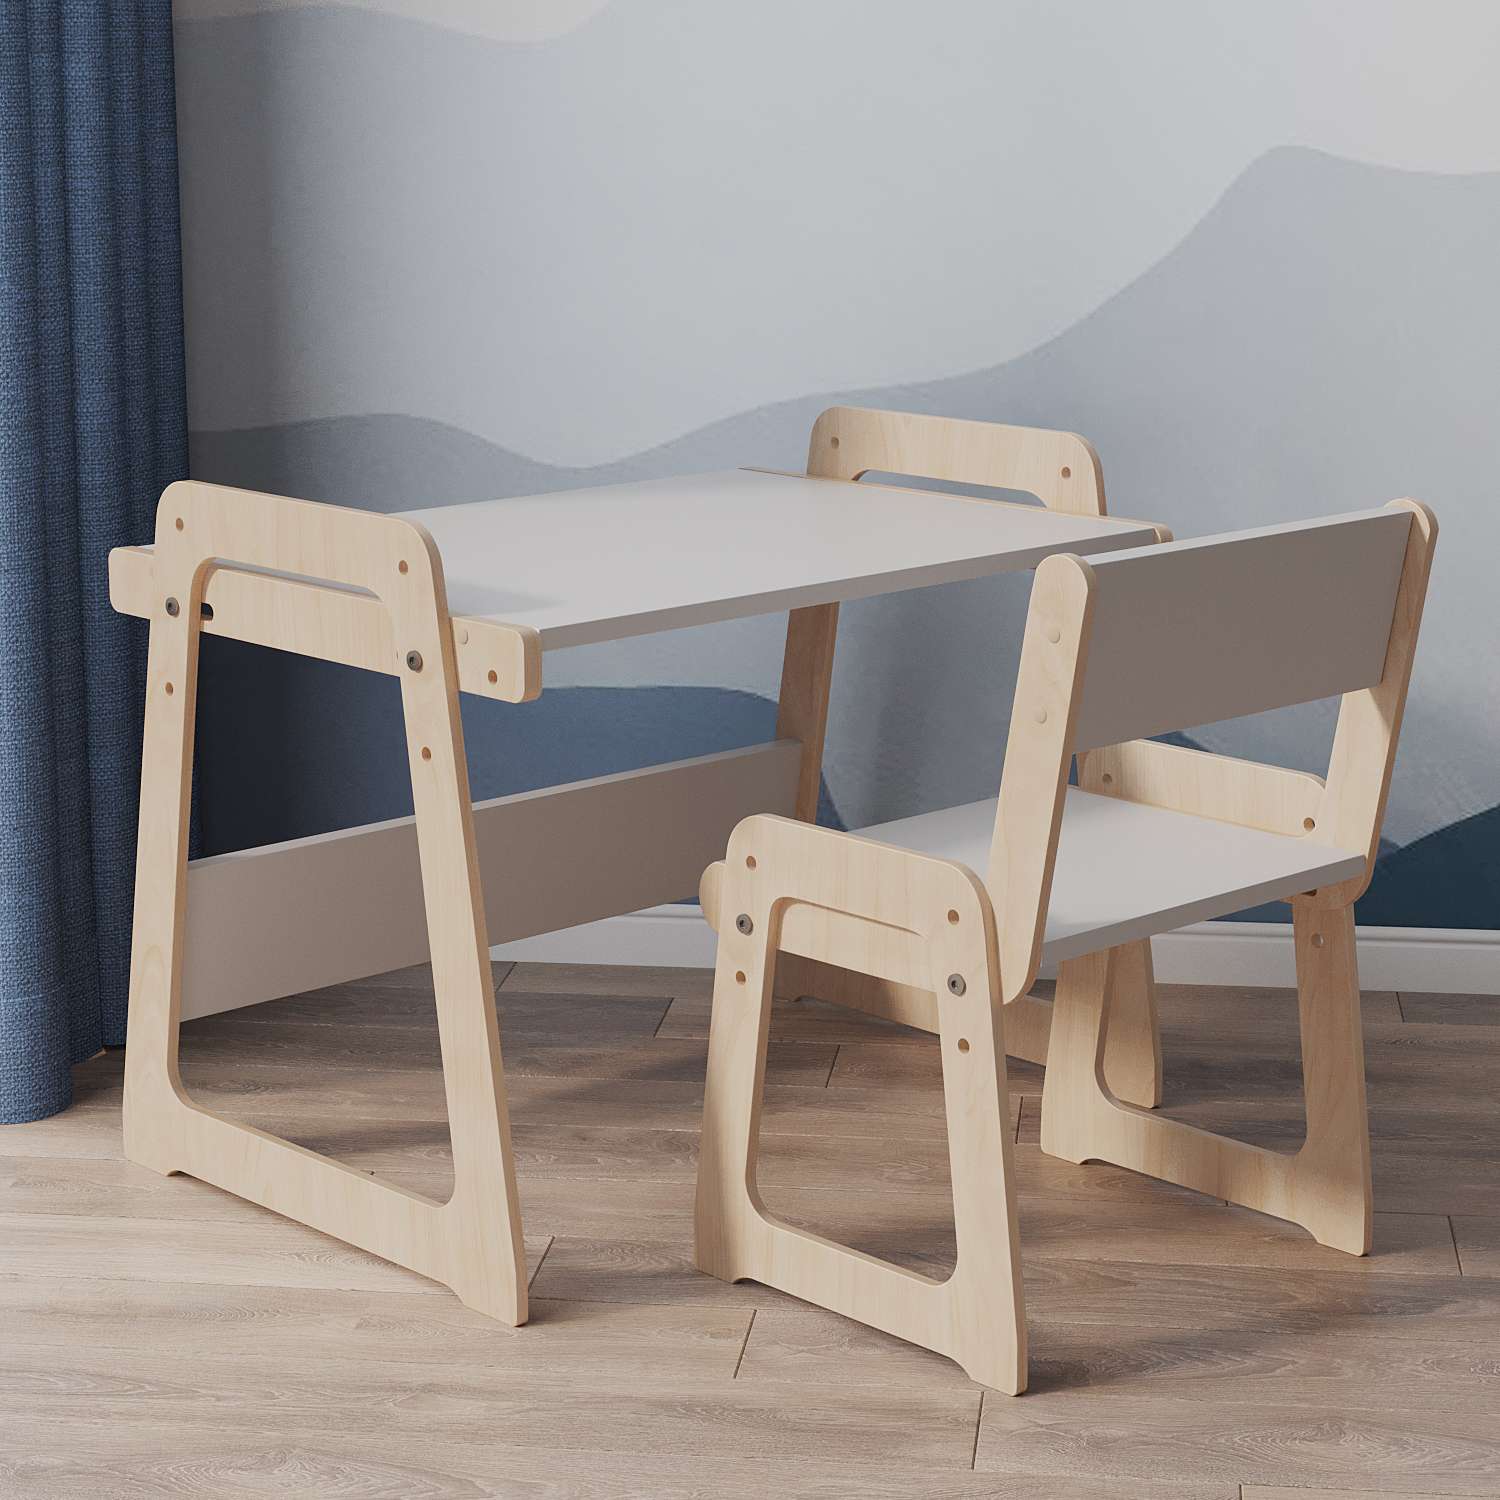 Детский стол и стул Сказочная Мастерская 2 модель - фото 2